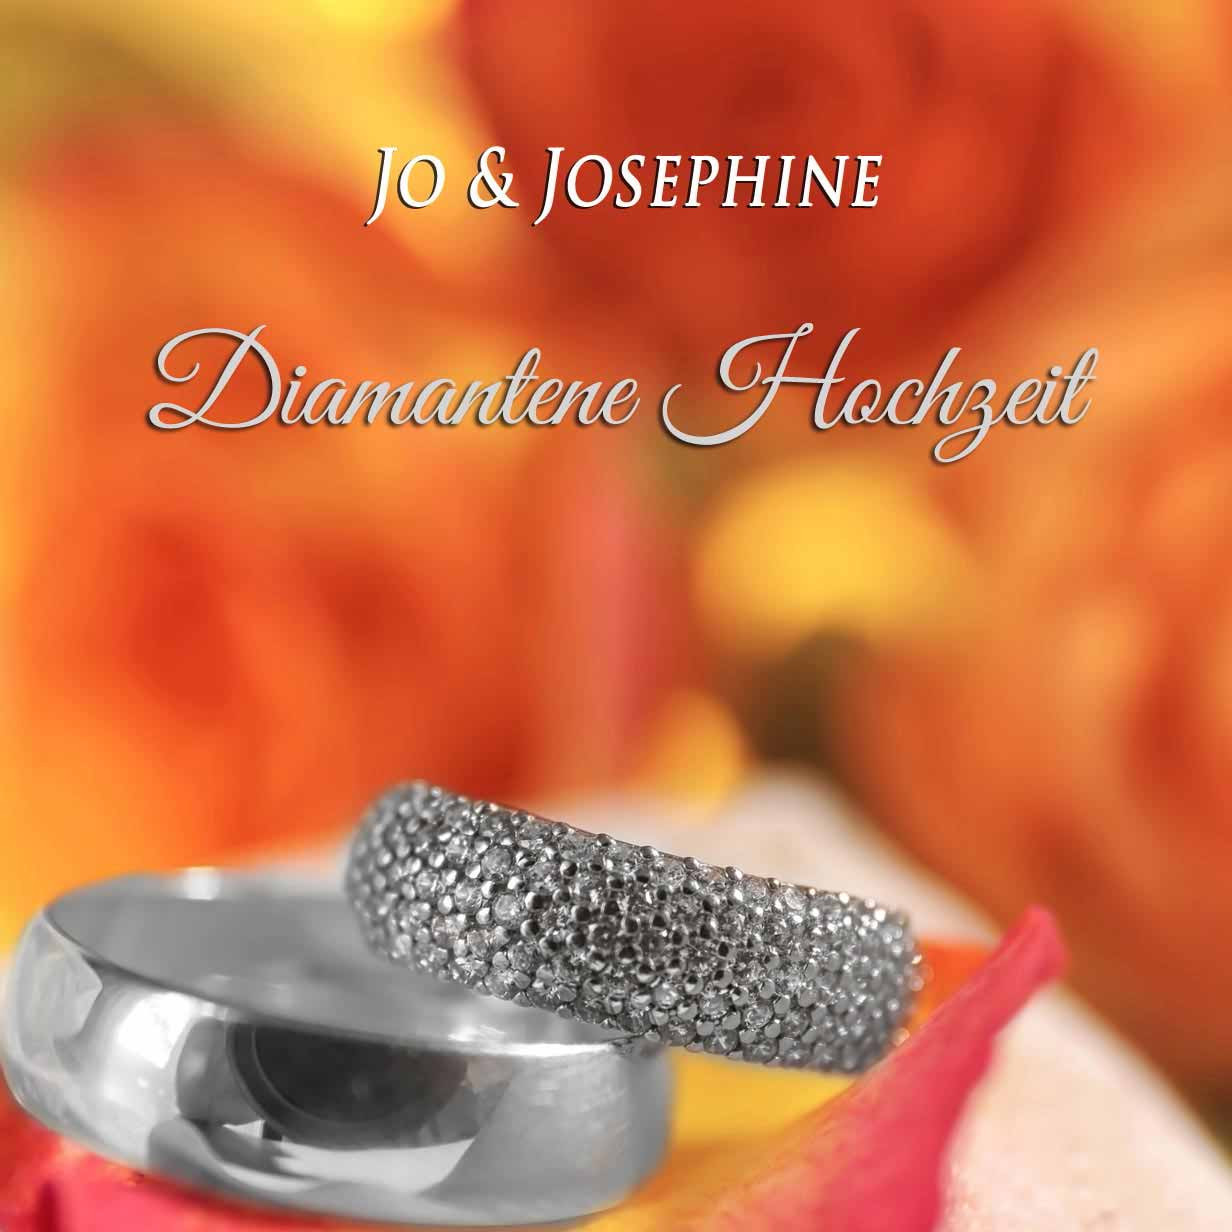 Glückwunsch Diamantene Hochzeit
 "Glückwünsche Diamantene Hochzeit" Lied als MP3 oder CD